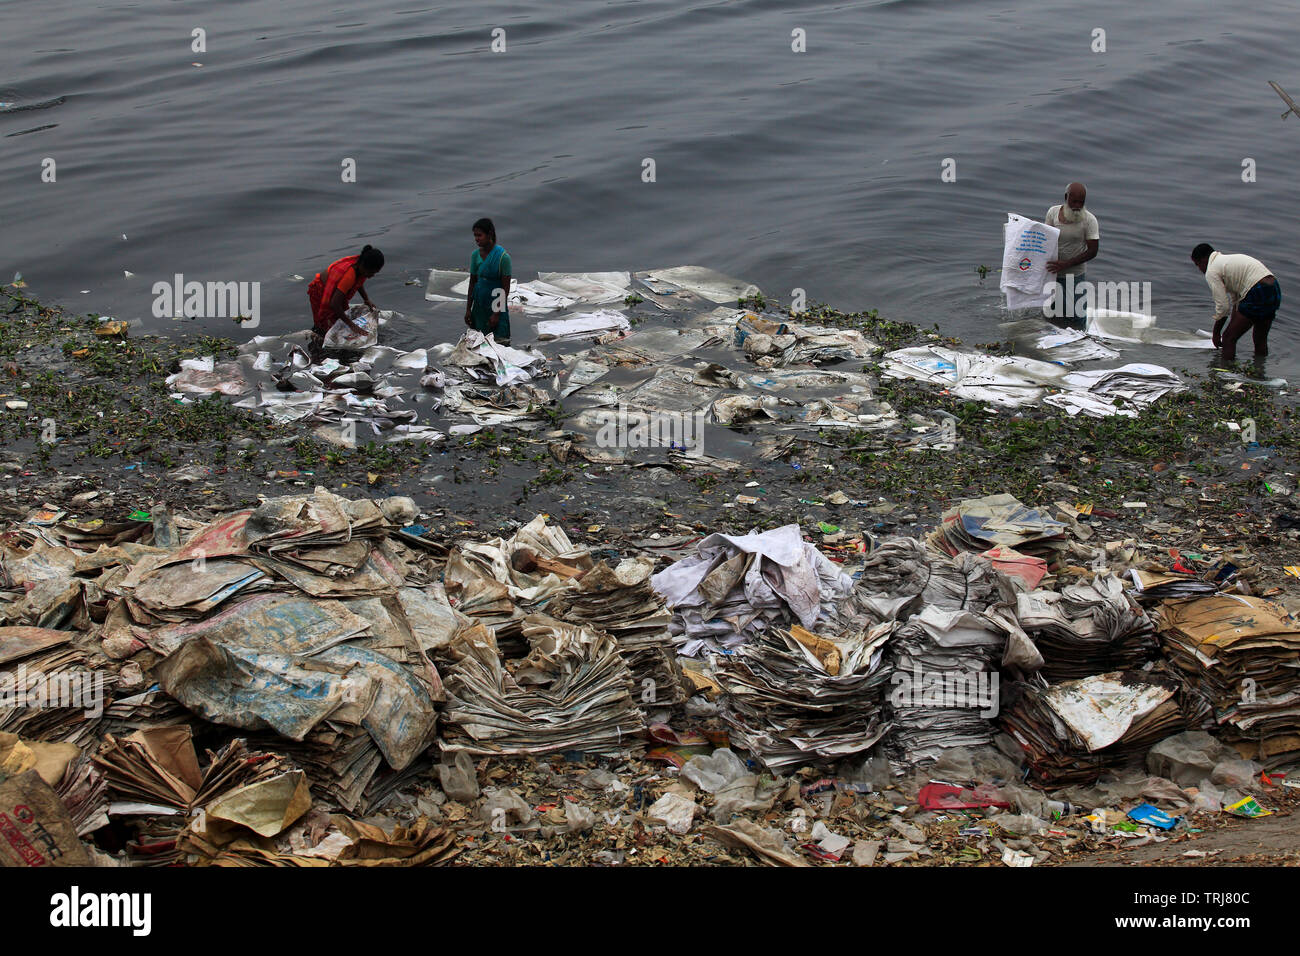 Arbeiter waschen Polyäthylenbeutel, die benutzt wurden, um Chemikalien zu tragen, in der buriganga Fluss für das Recycling. Dhaka, Bangladesch Stockfoto